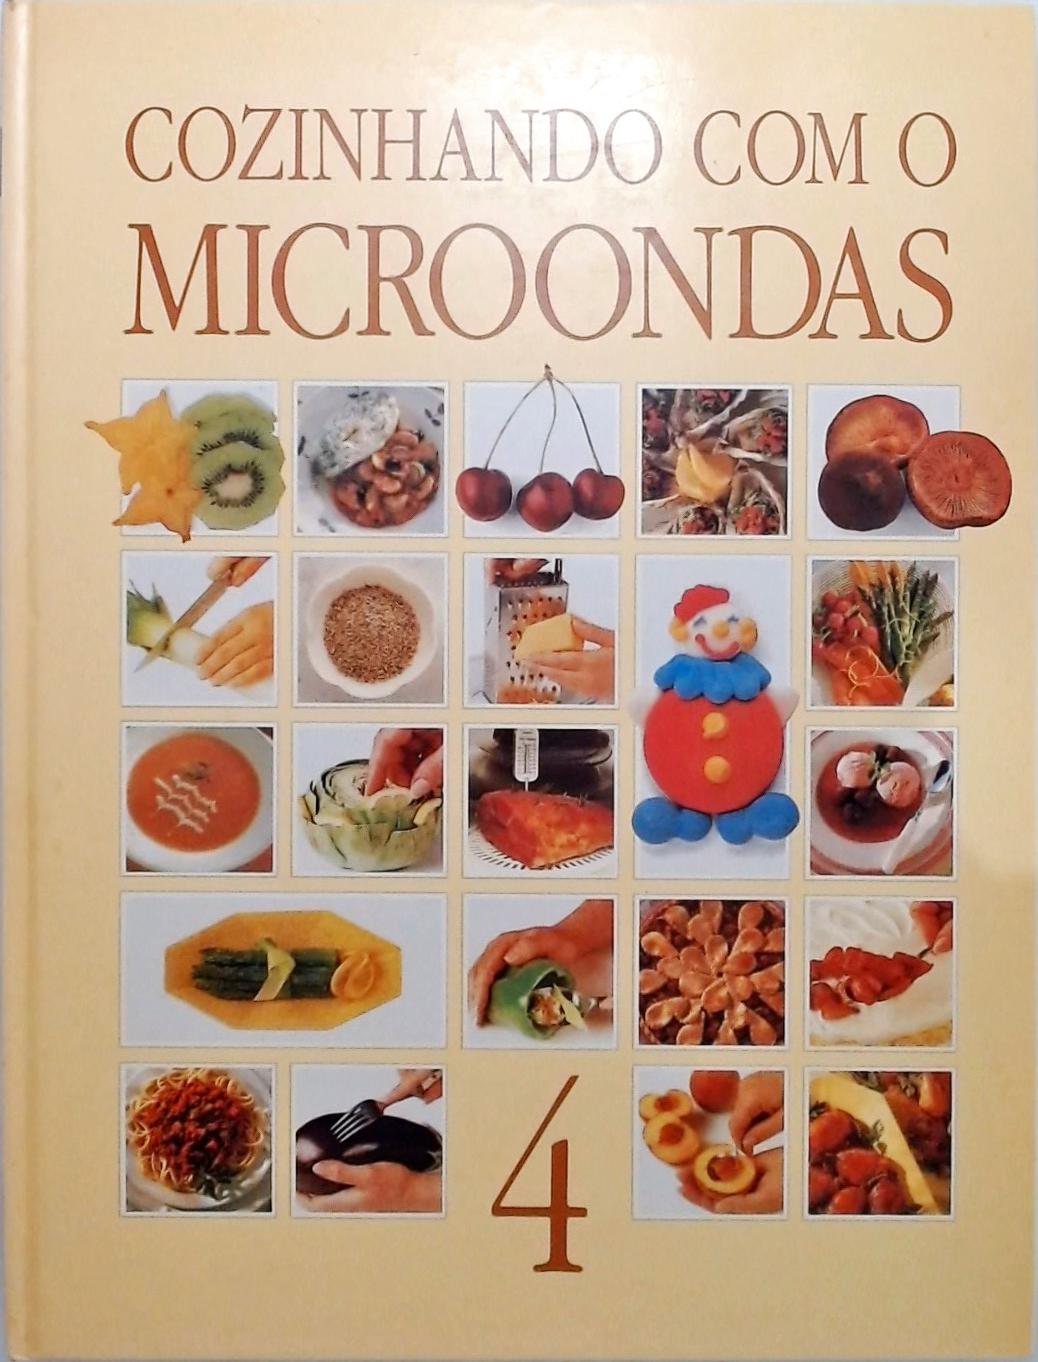 Cozinhando com o Microondas - Volume 4